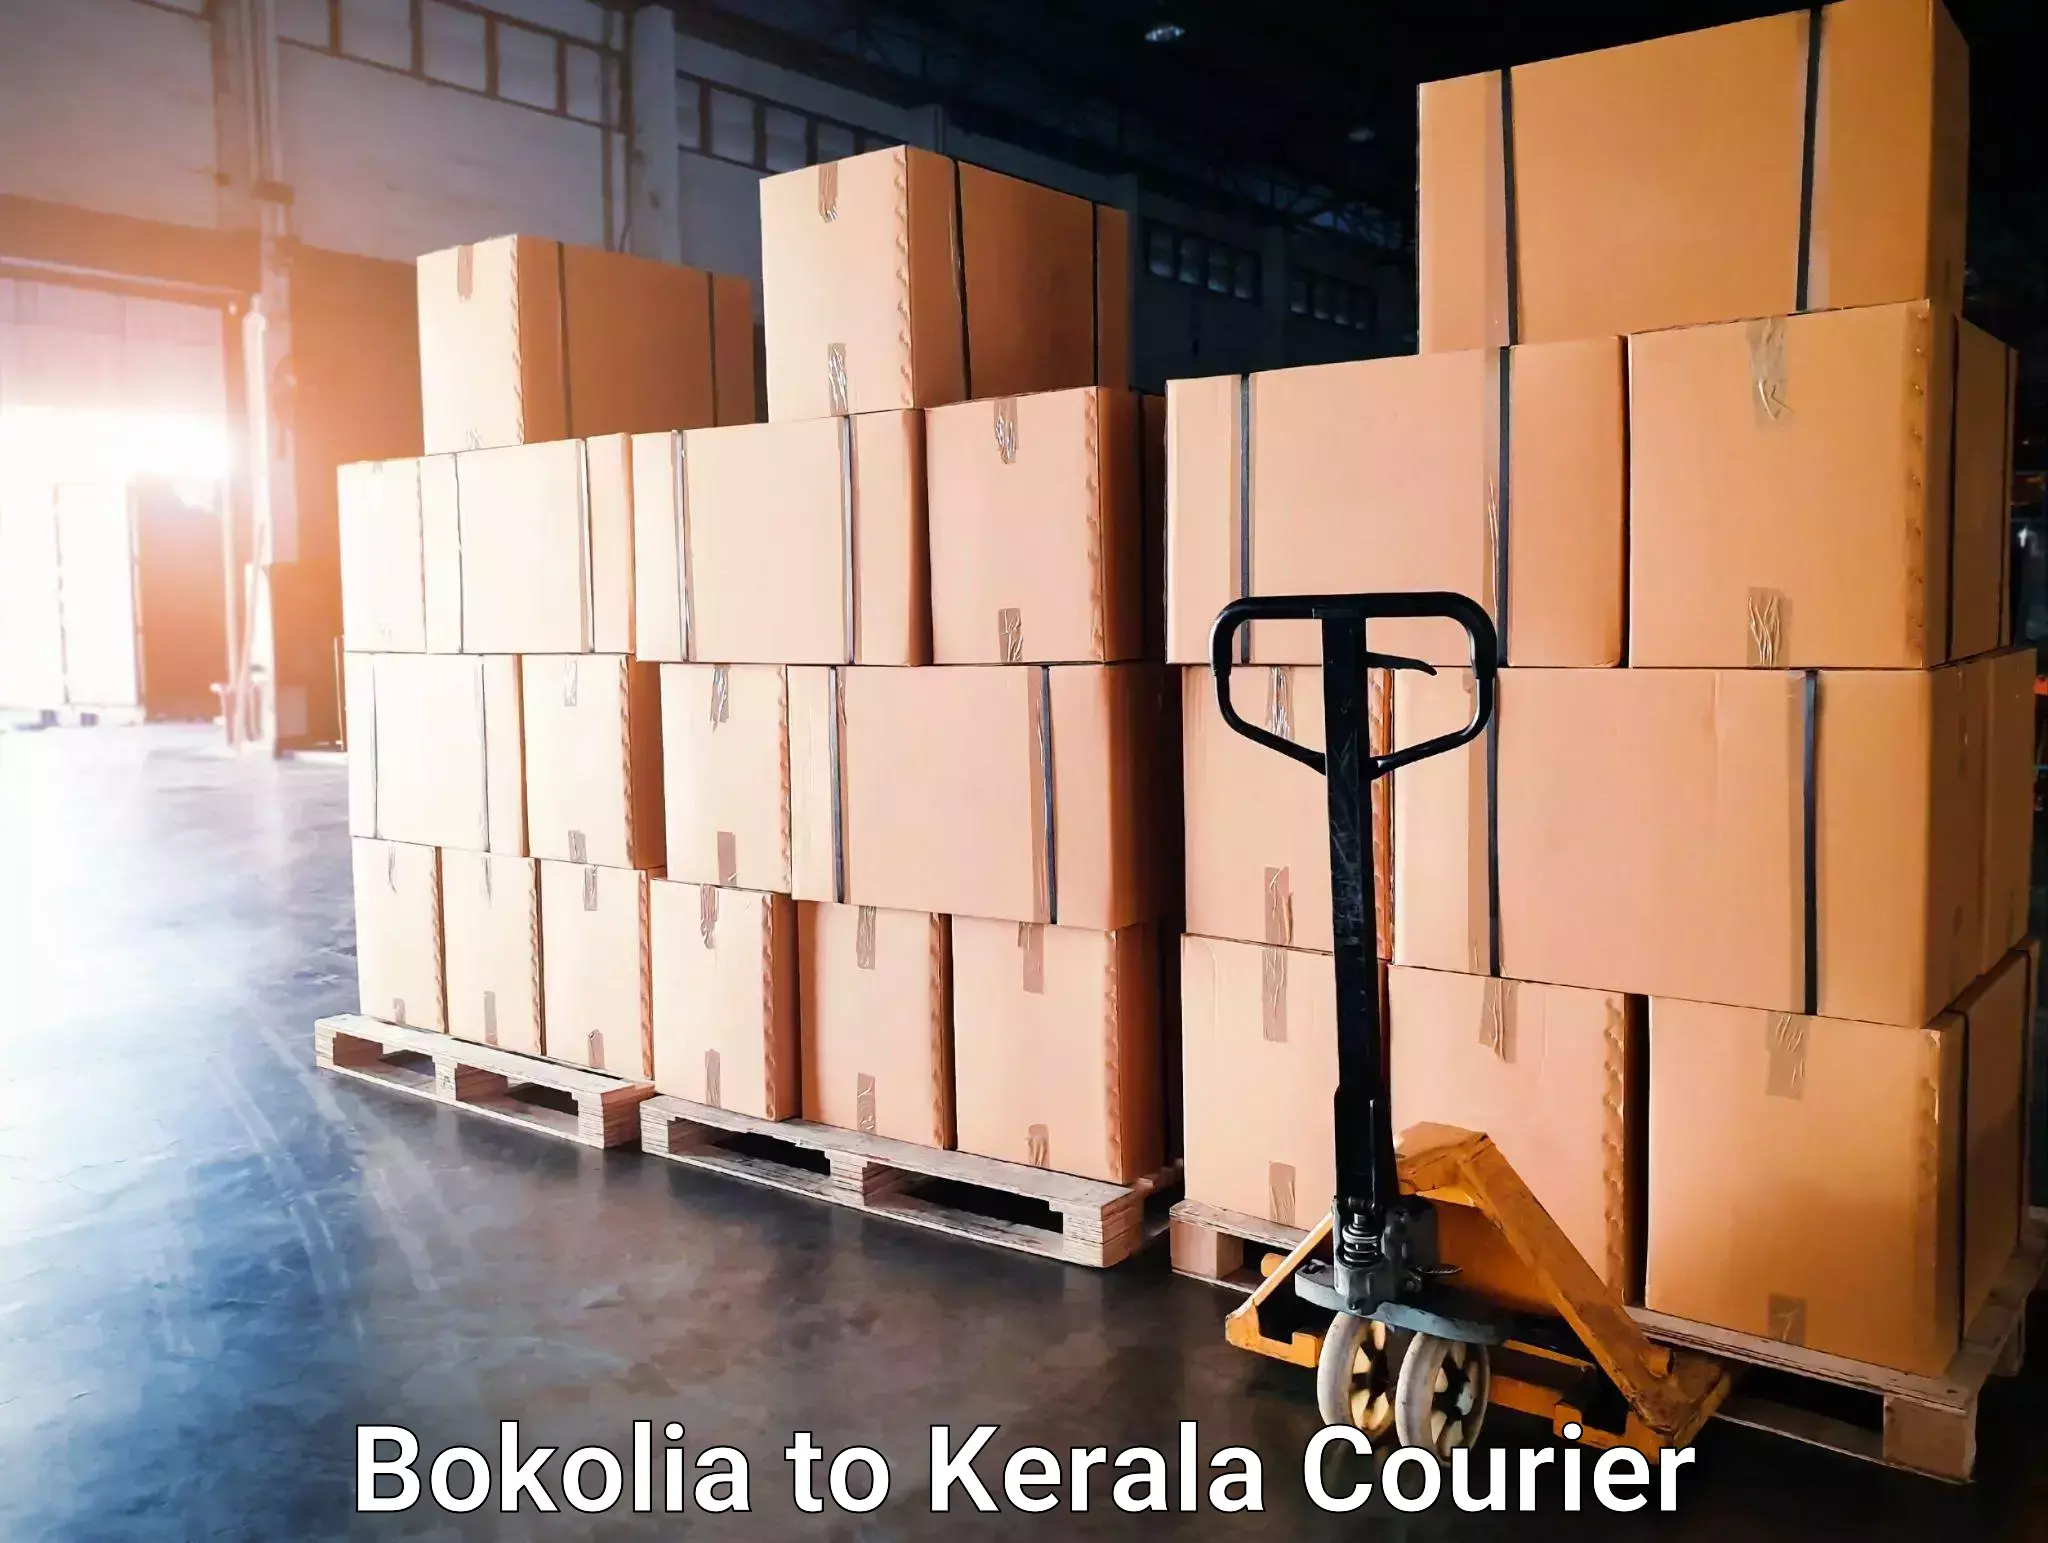 Courier service comparison Bokolia to Nilambur